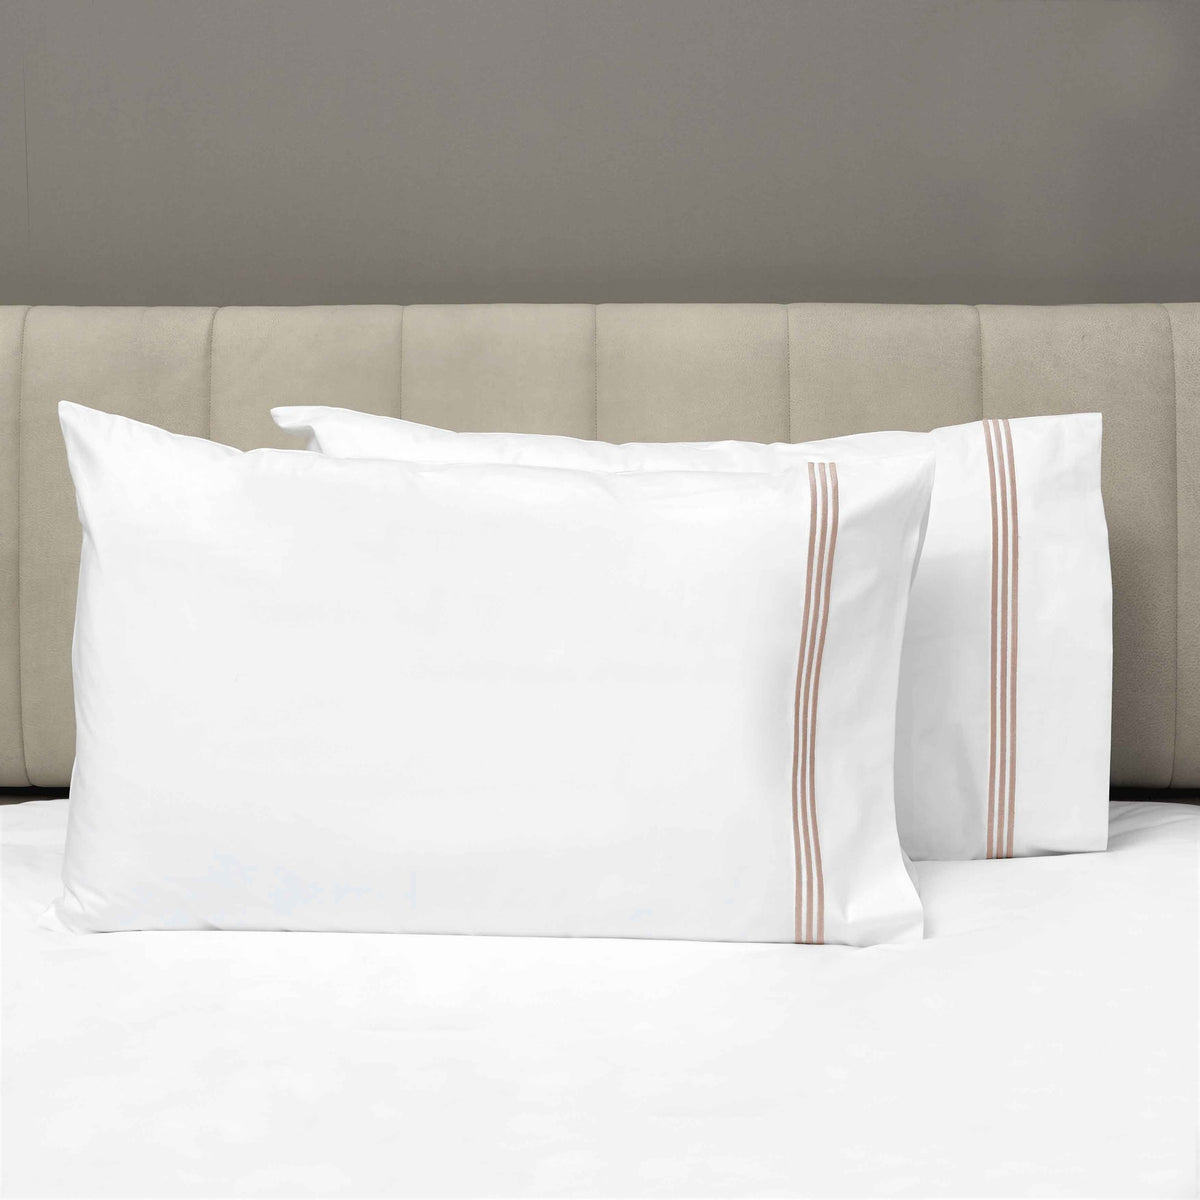 Pair of Pillowcases of Signoria Platinum Percale Bedding in White/Antique Rose Color